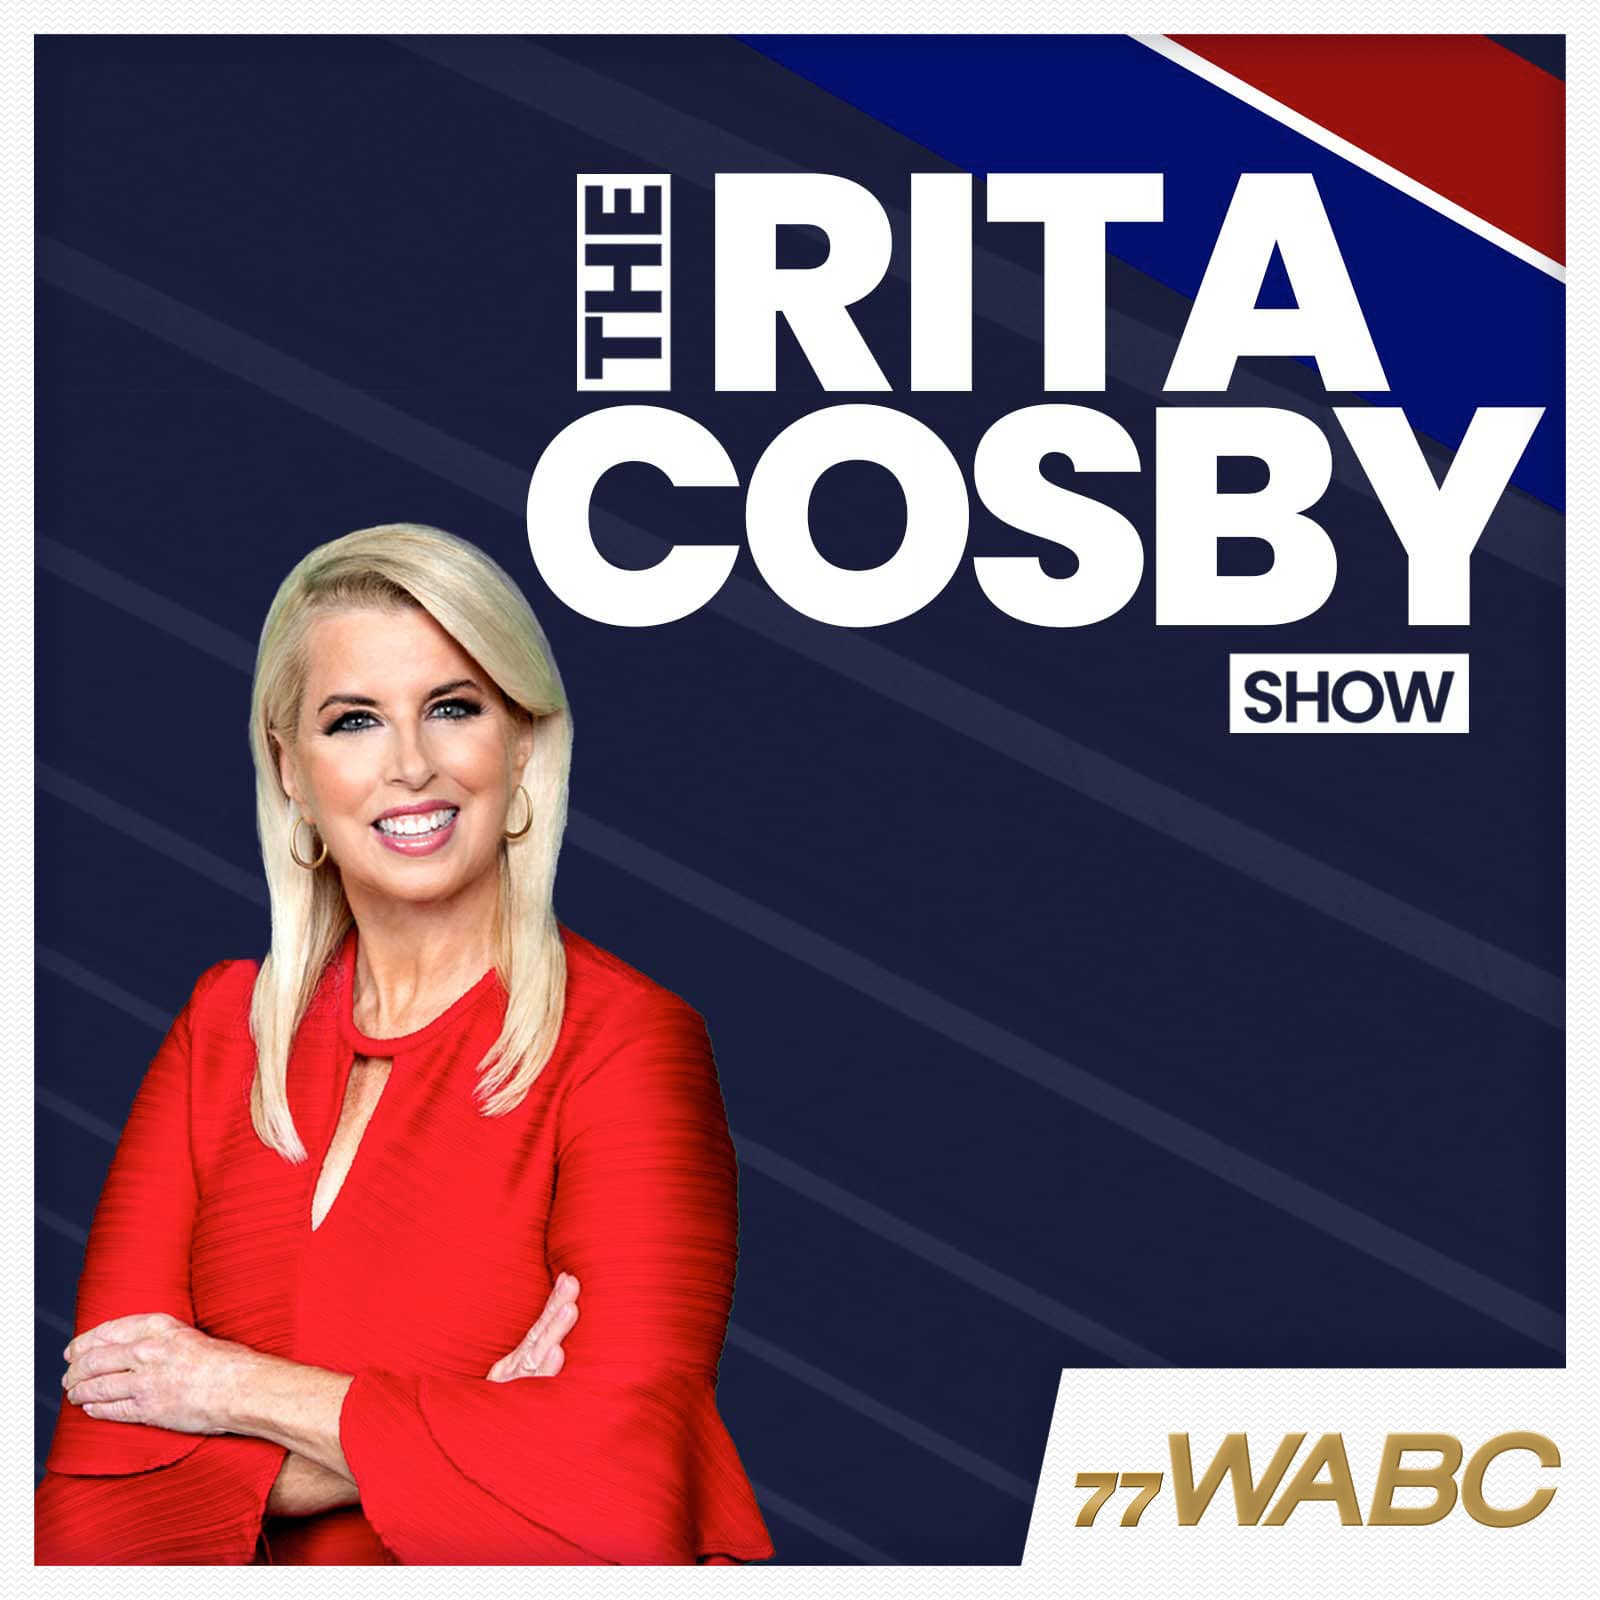 rita-cosby-podcast-new-logo-207